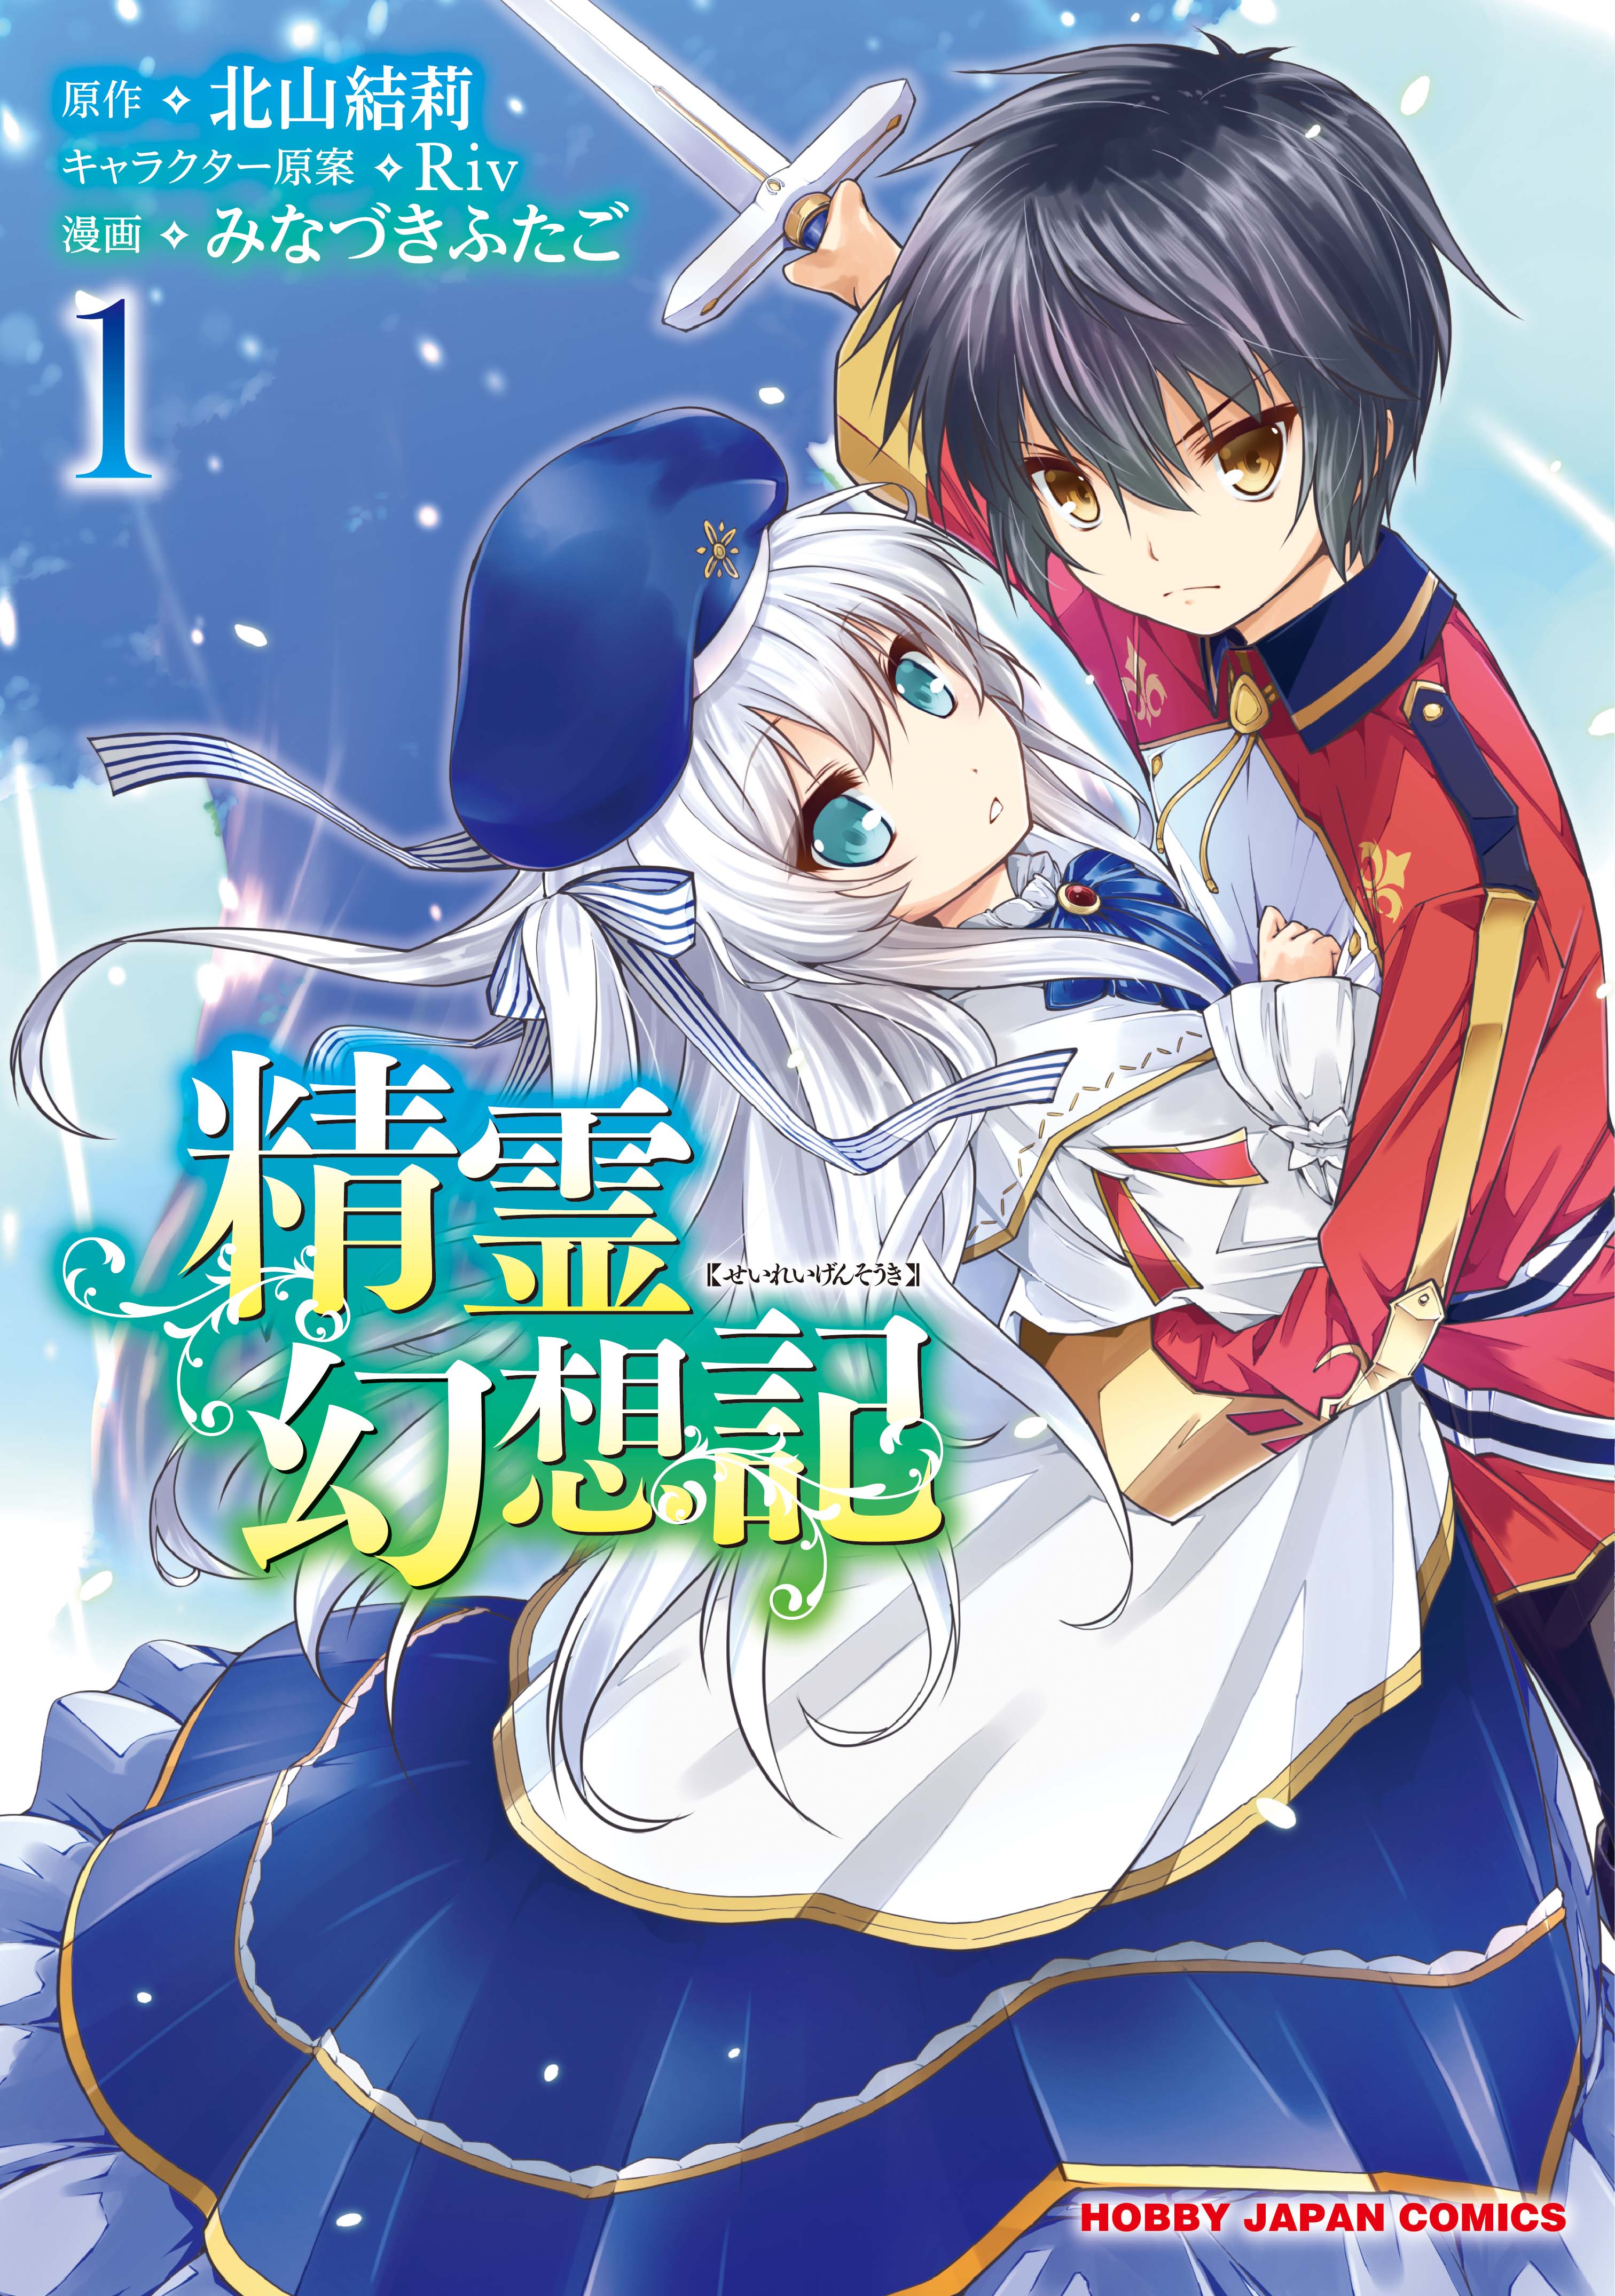 Seirei Gensouki: Spirit Chronicles Volume 8 (Seirei Gensouki) - Light  Novels - BOOK☆WALKER